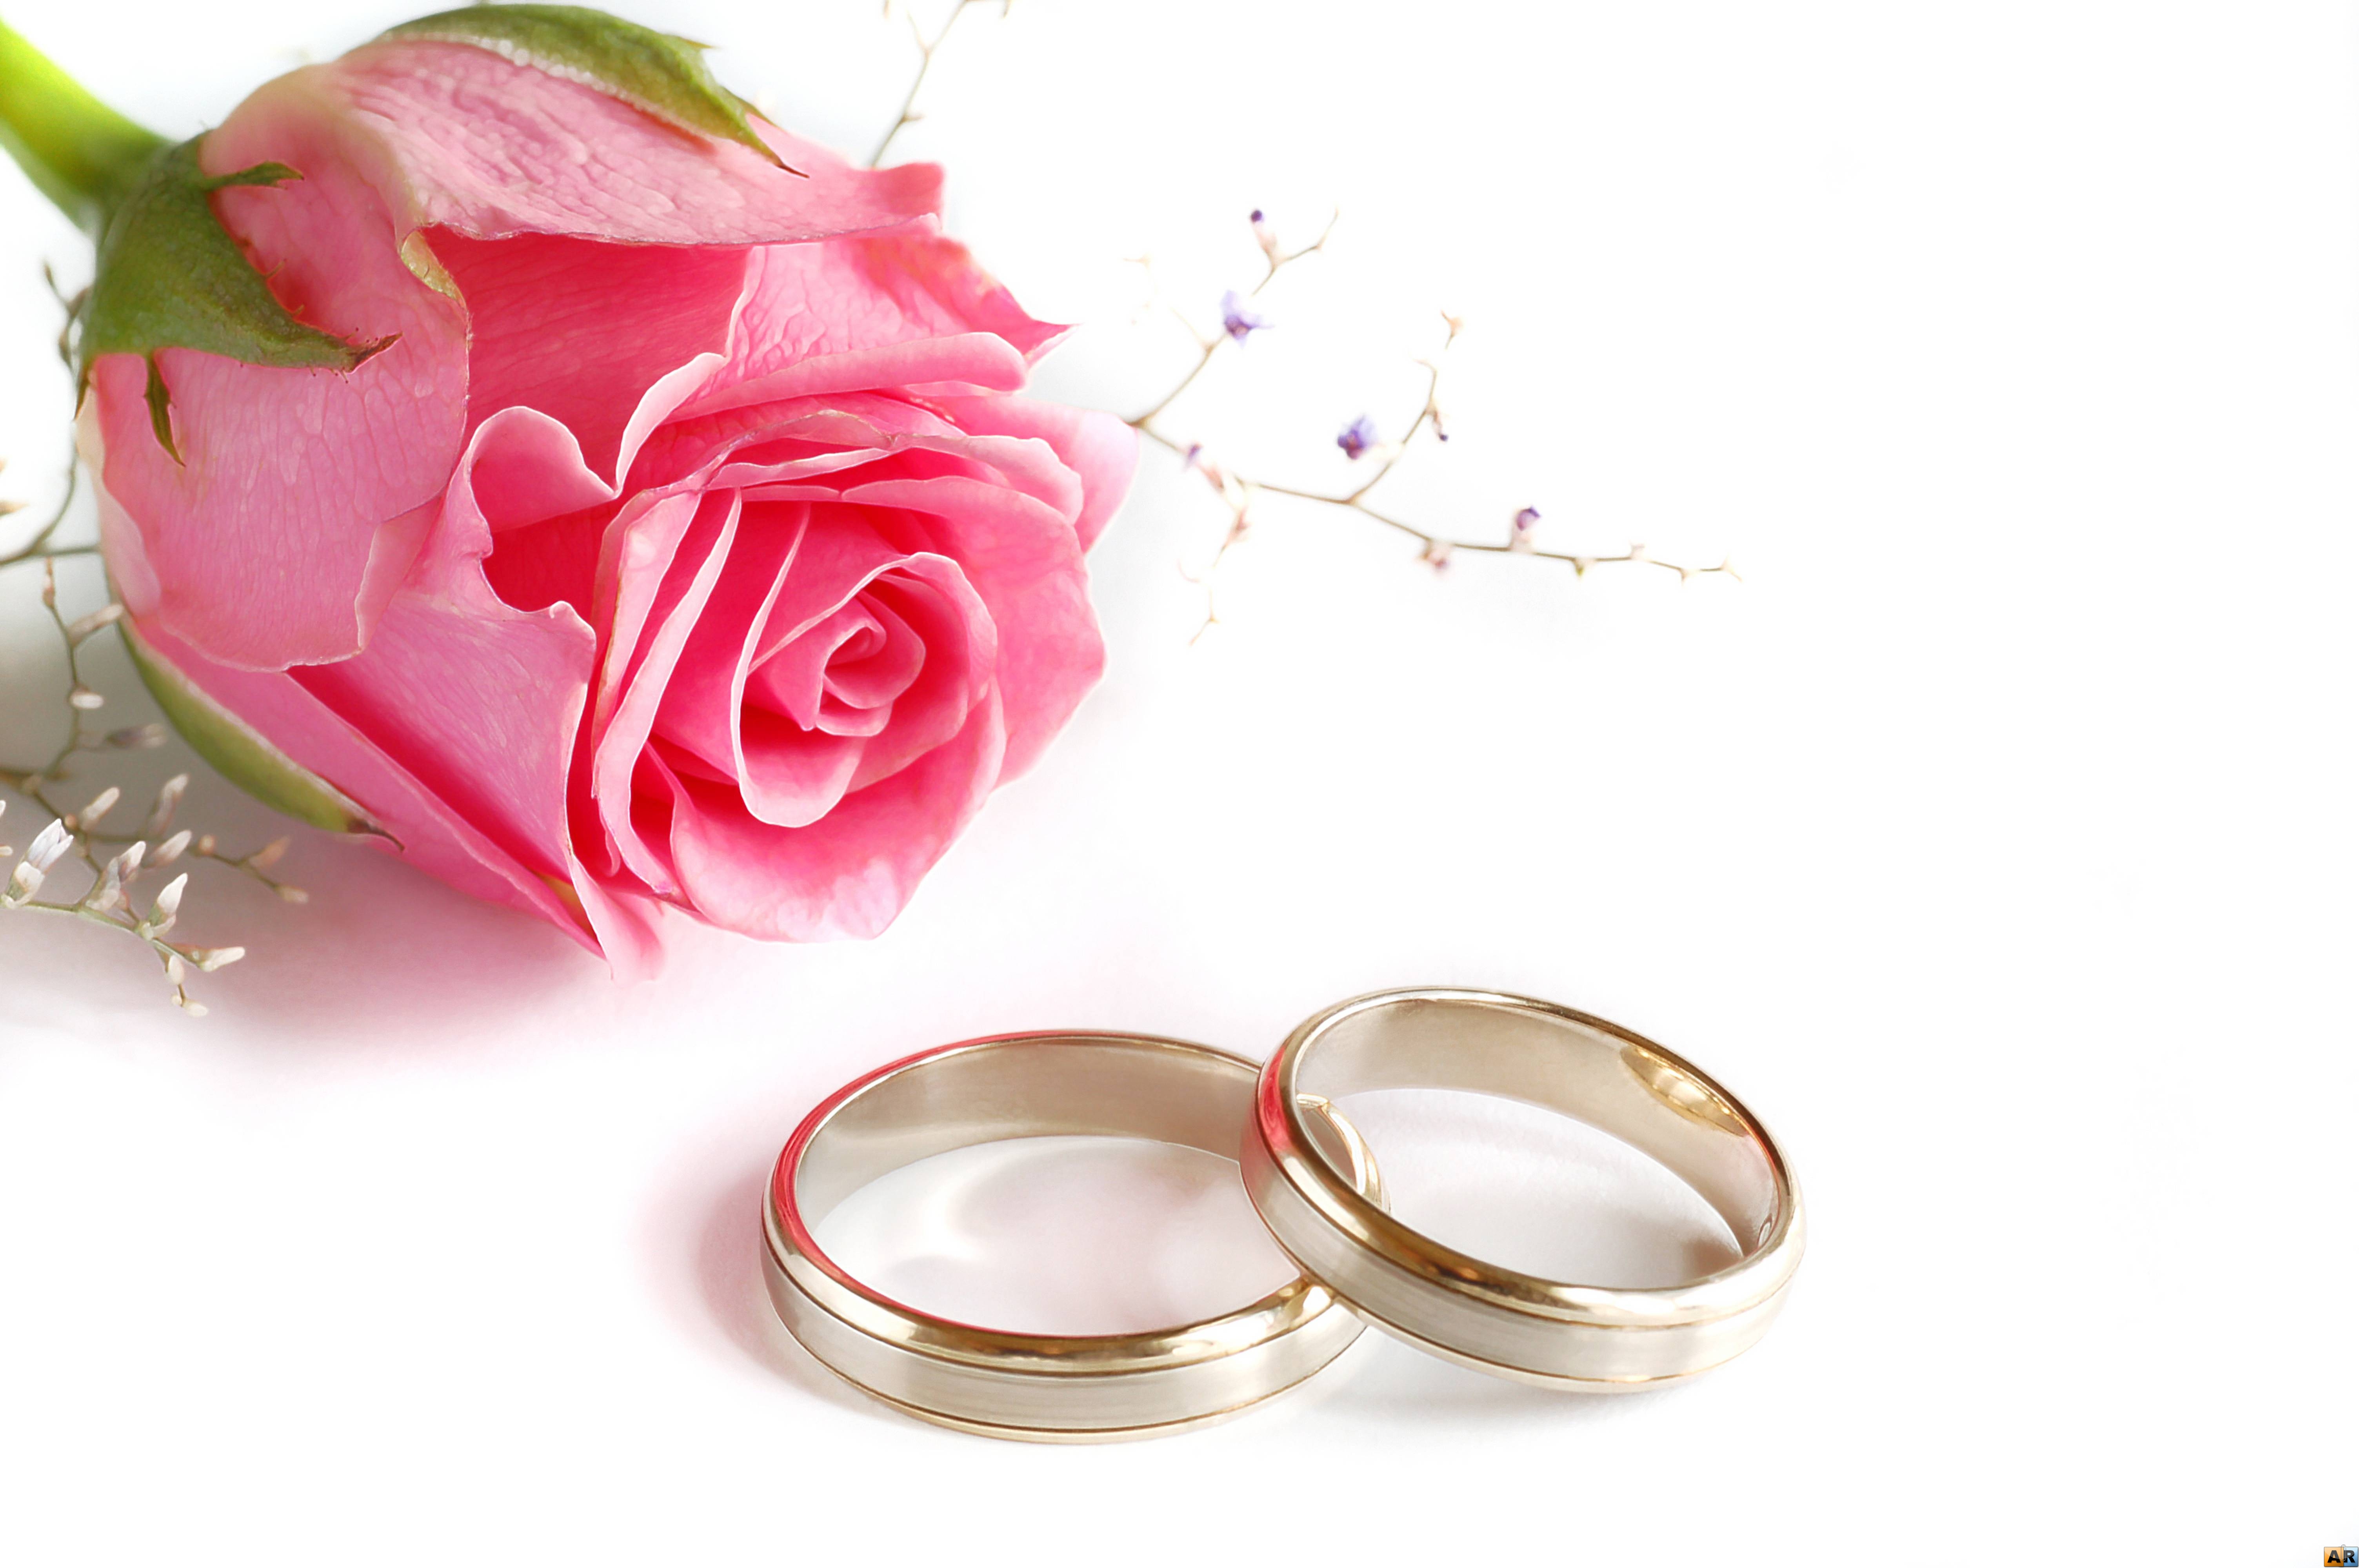 リング壁紙,リング,ピンク,結婚式用品,結婚指輪,婚約指輪